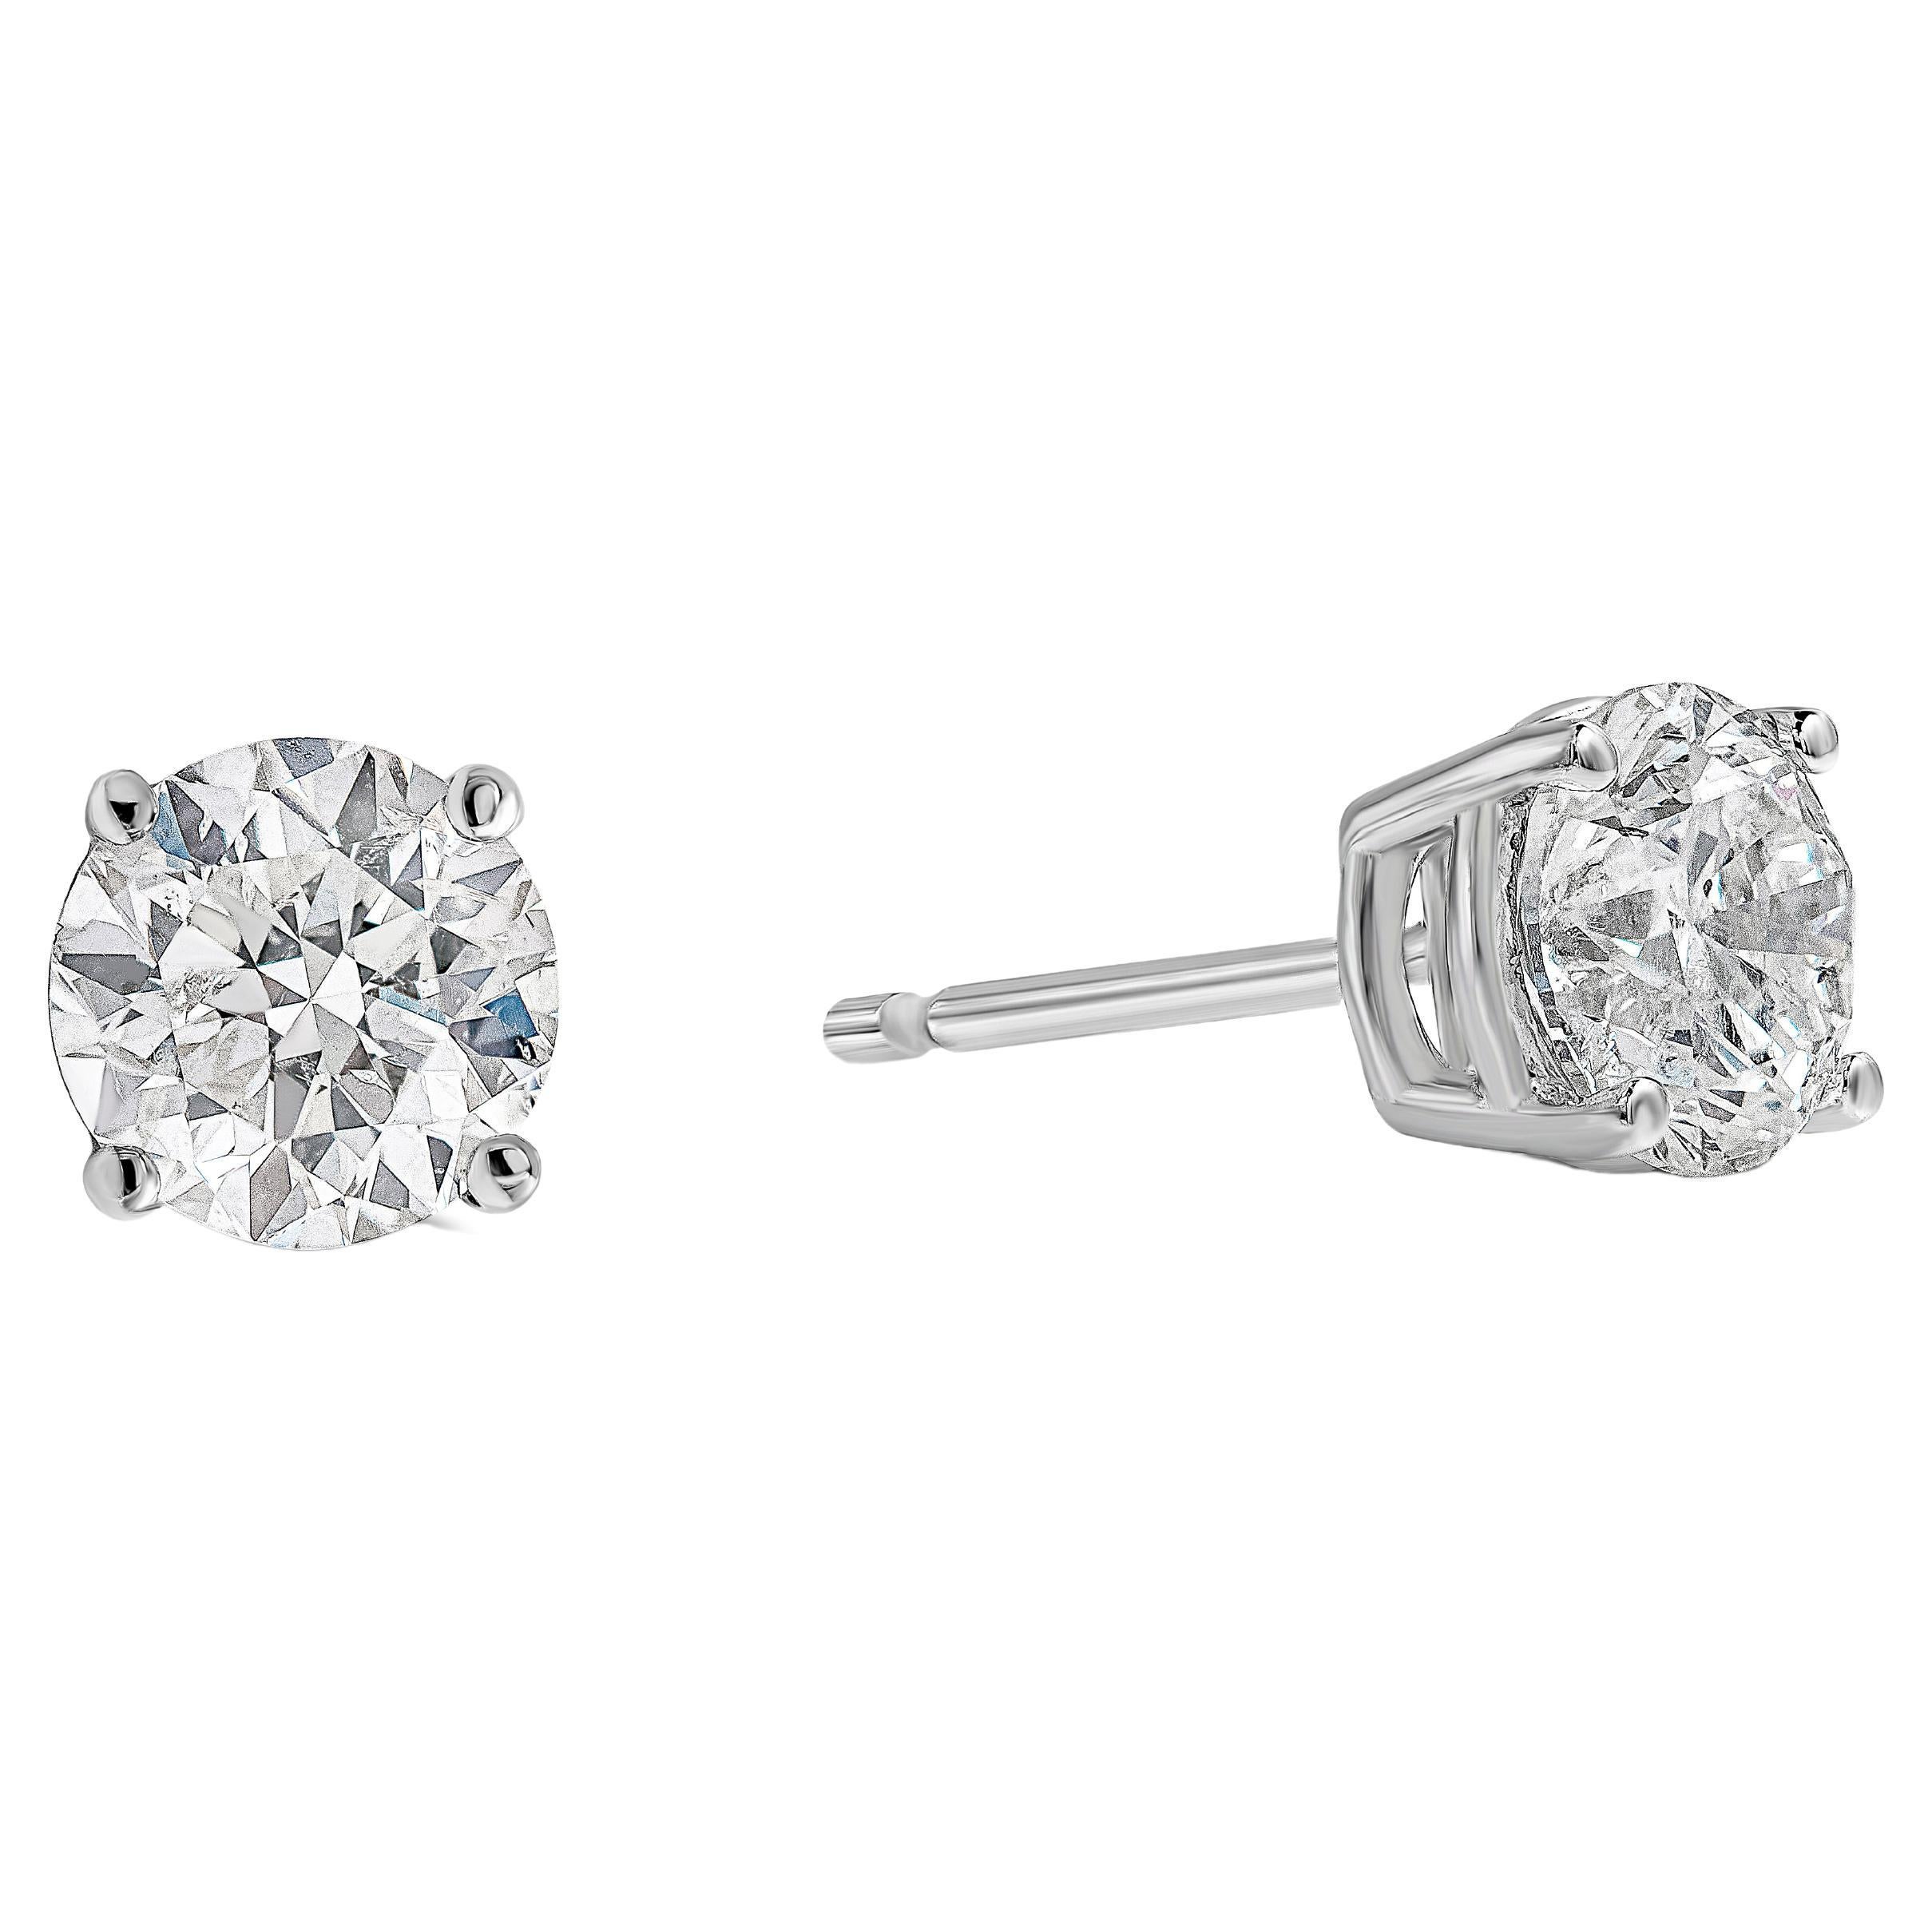 Une paire de boucles d'oreilles classique mettant en valeur deux diamants ronds brillants, chacun serti dans une monture panier à quatre griffes en or blanc 18k. Les diamants pèsent 1,63 carats au total et sont de couleur F-G et de pureté